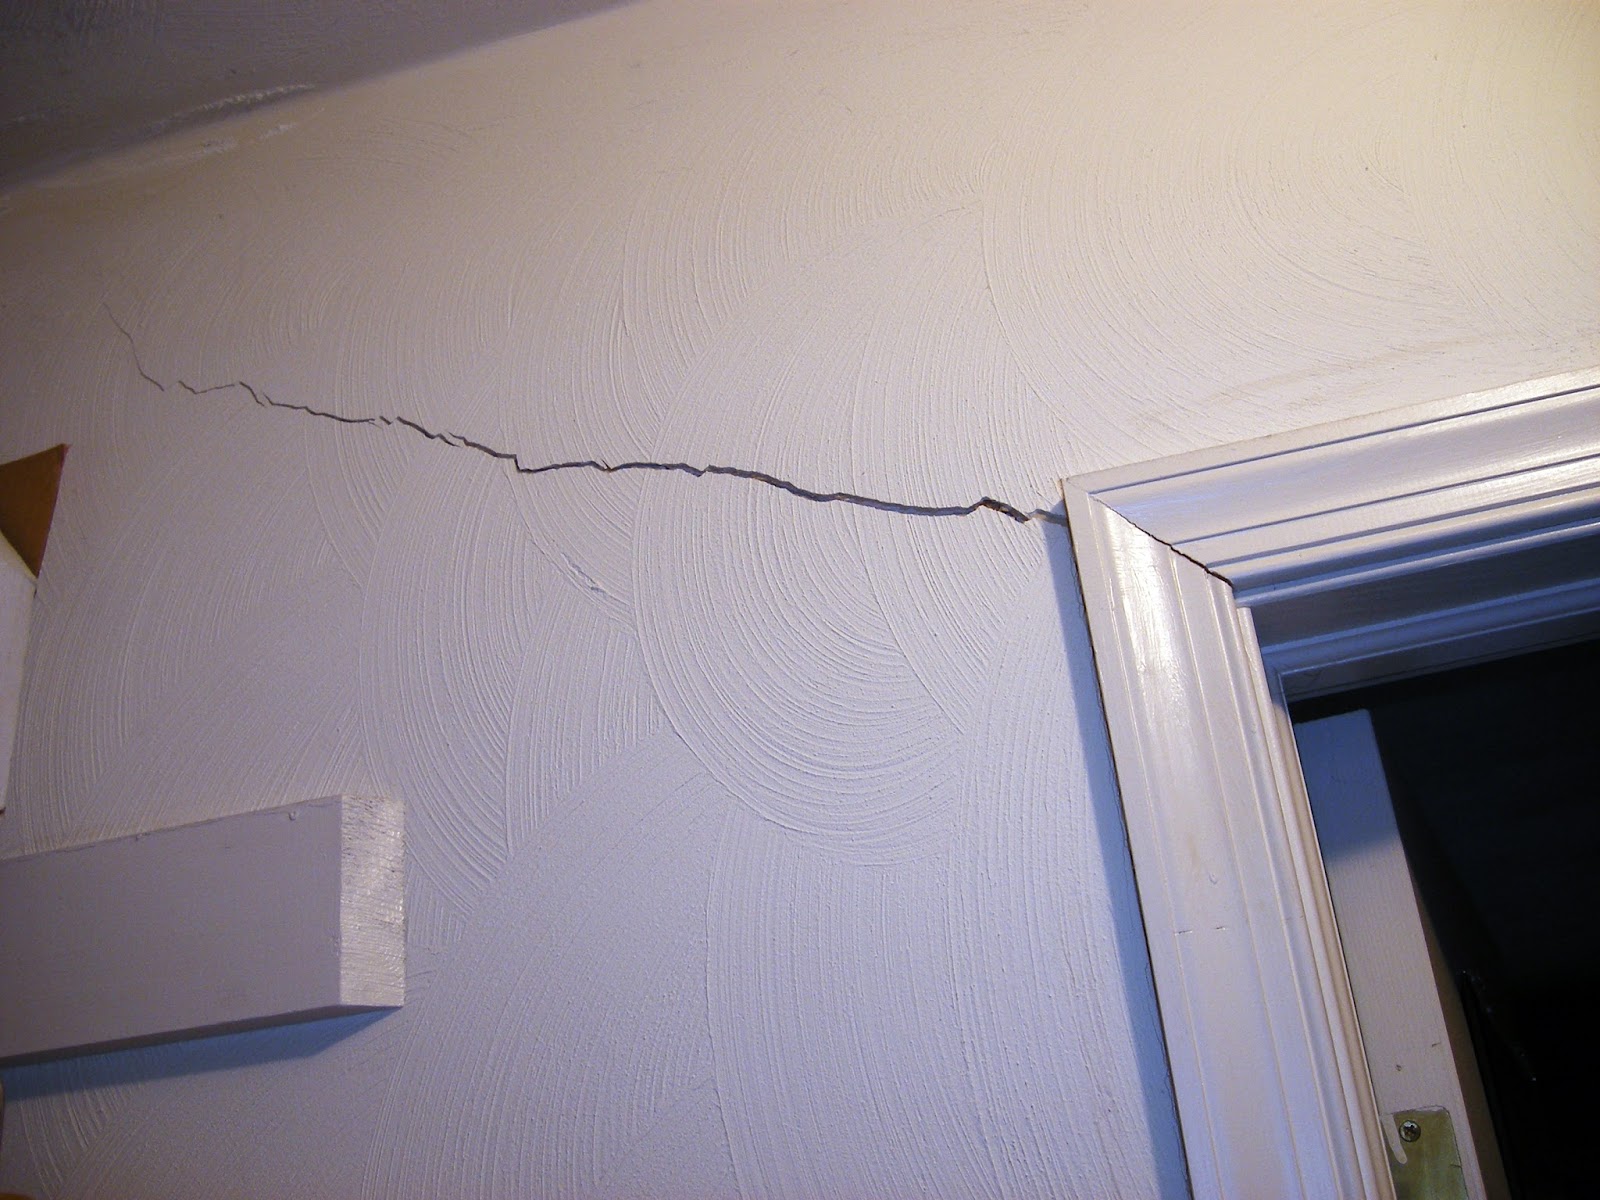 Трещины на стенах в квартире